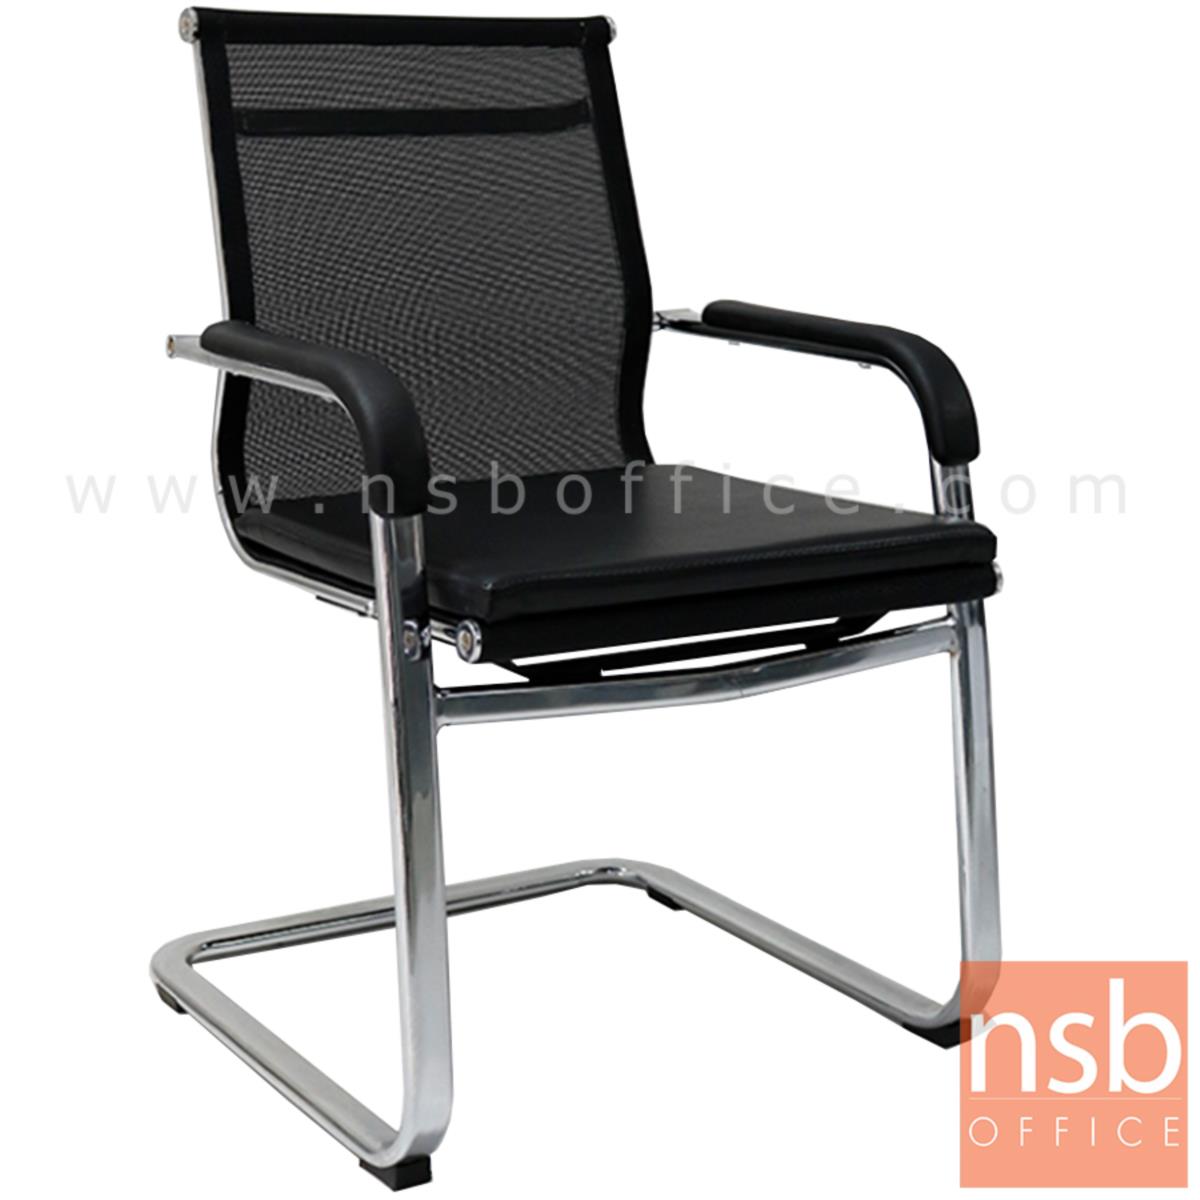 B04A170:เก้าอี้รับแขกขาตัวซีหลังเน็ต รุ่น PL-J400  ขาเหล็กชุบโครเมี่ยม